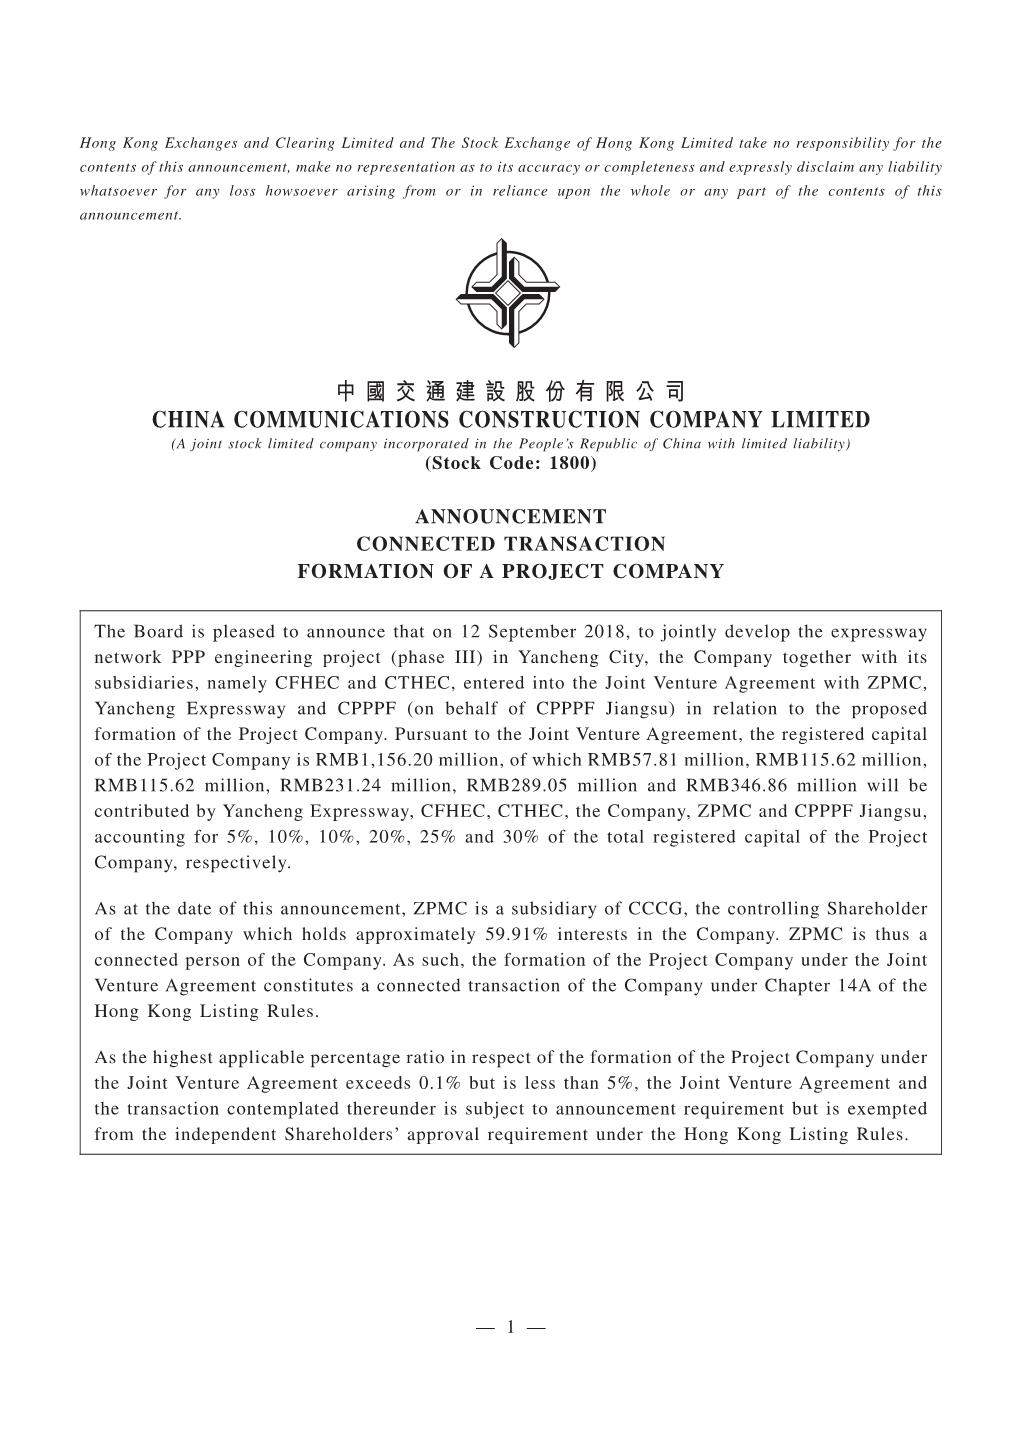 中 國 交 通 建 設 股 份 有 限 公 司 China Communications